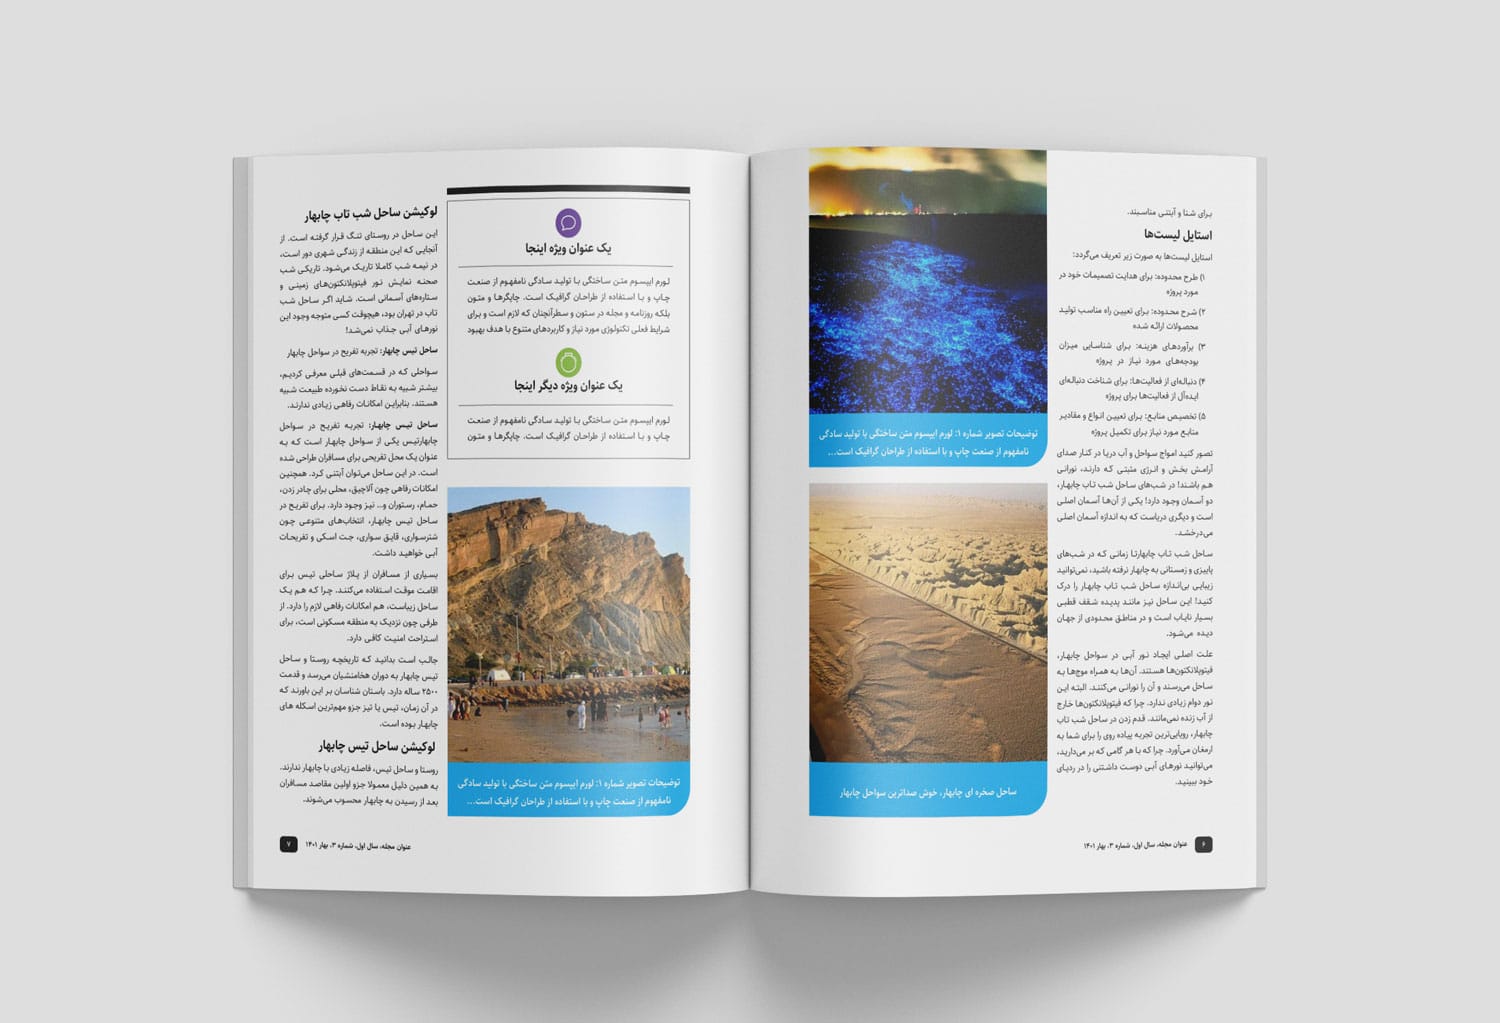 قالب آماده صفحه آرایی و طراحی مجله ایرانی هنری و نشریه الکترونیکی فارسی با ایندیزاین